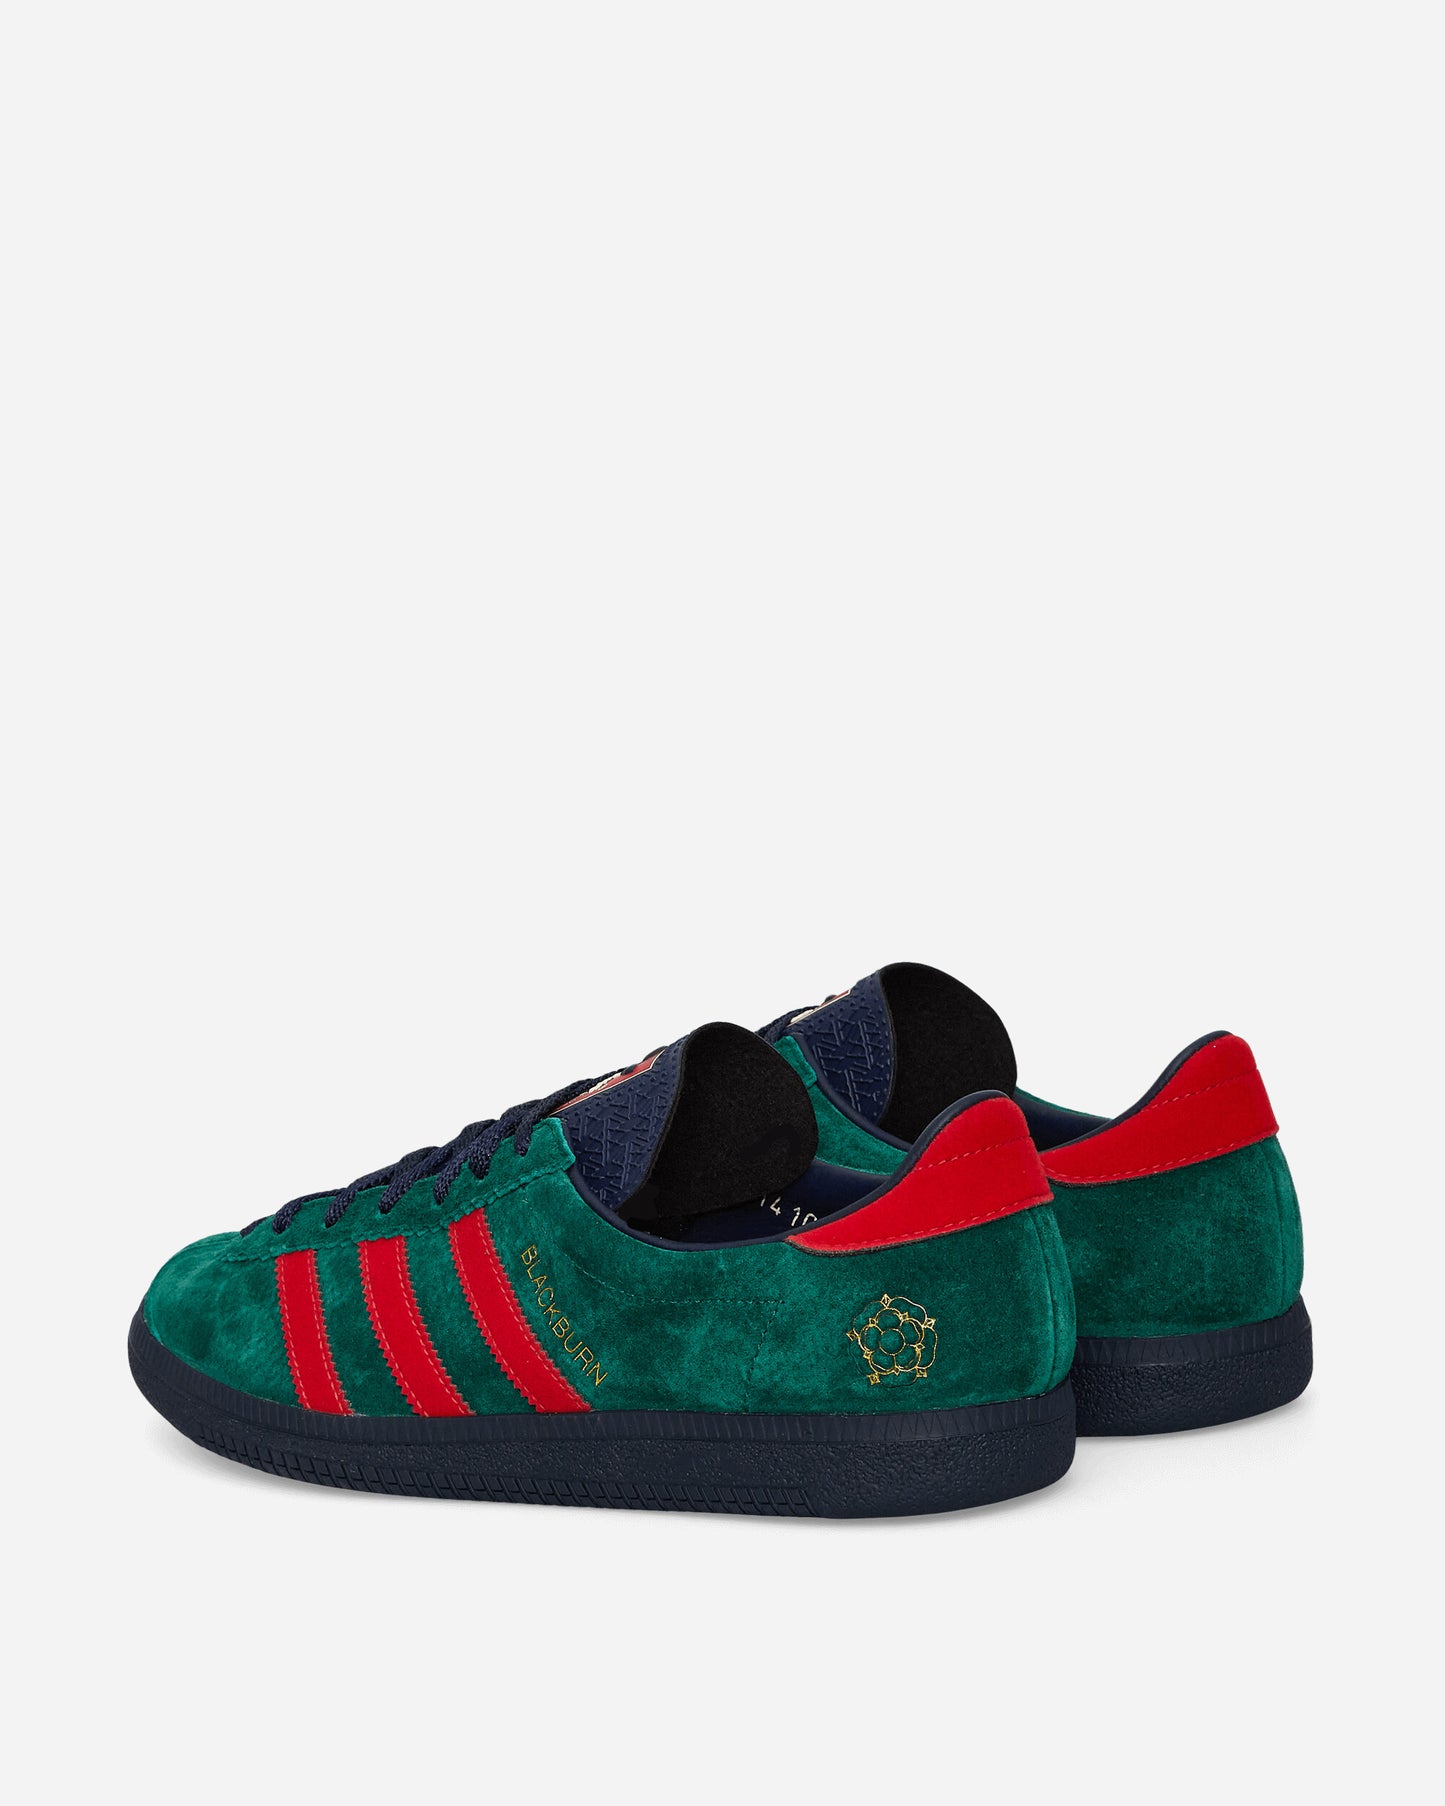 adidas Blackburn Spzl Collegiate Green/Scarlet Sneakers Low IH2139